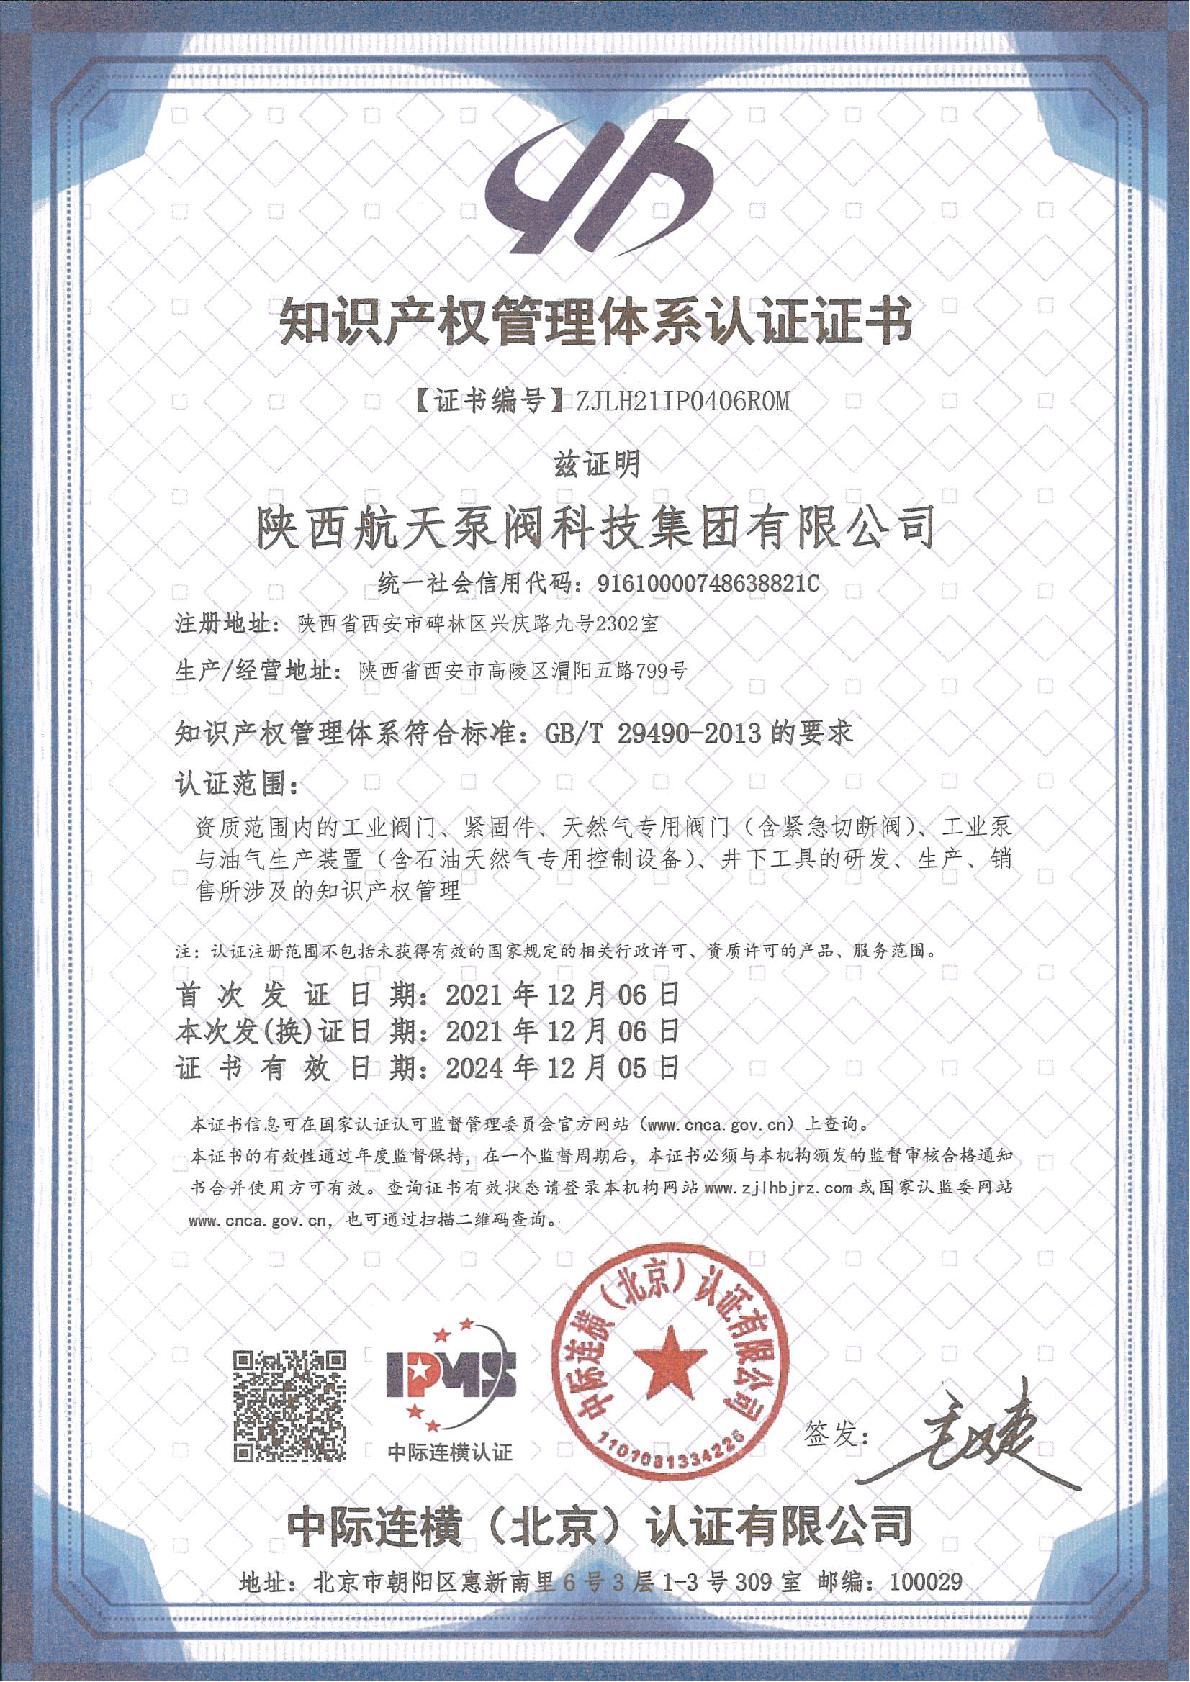 知識產權管理體系證書-IPMS證書中文